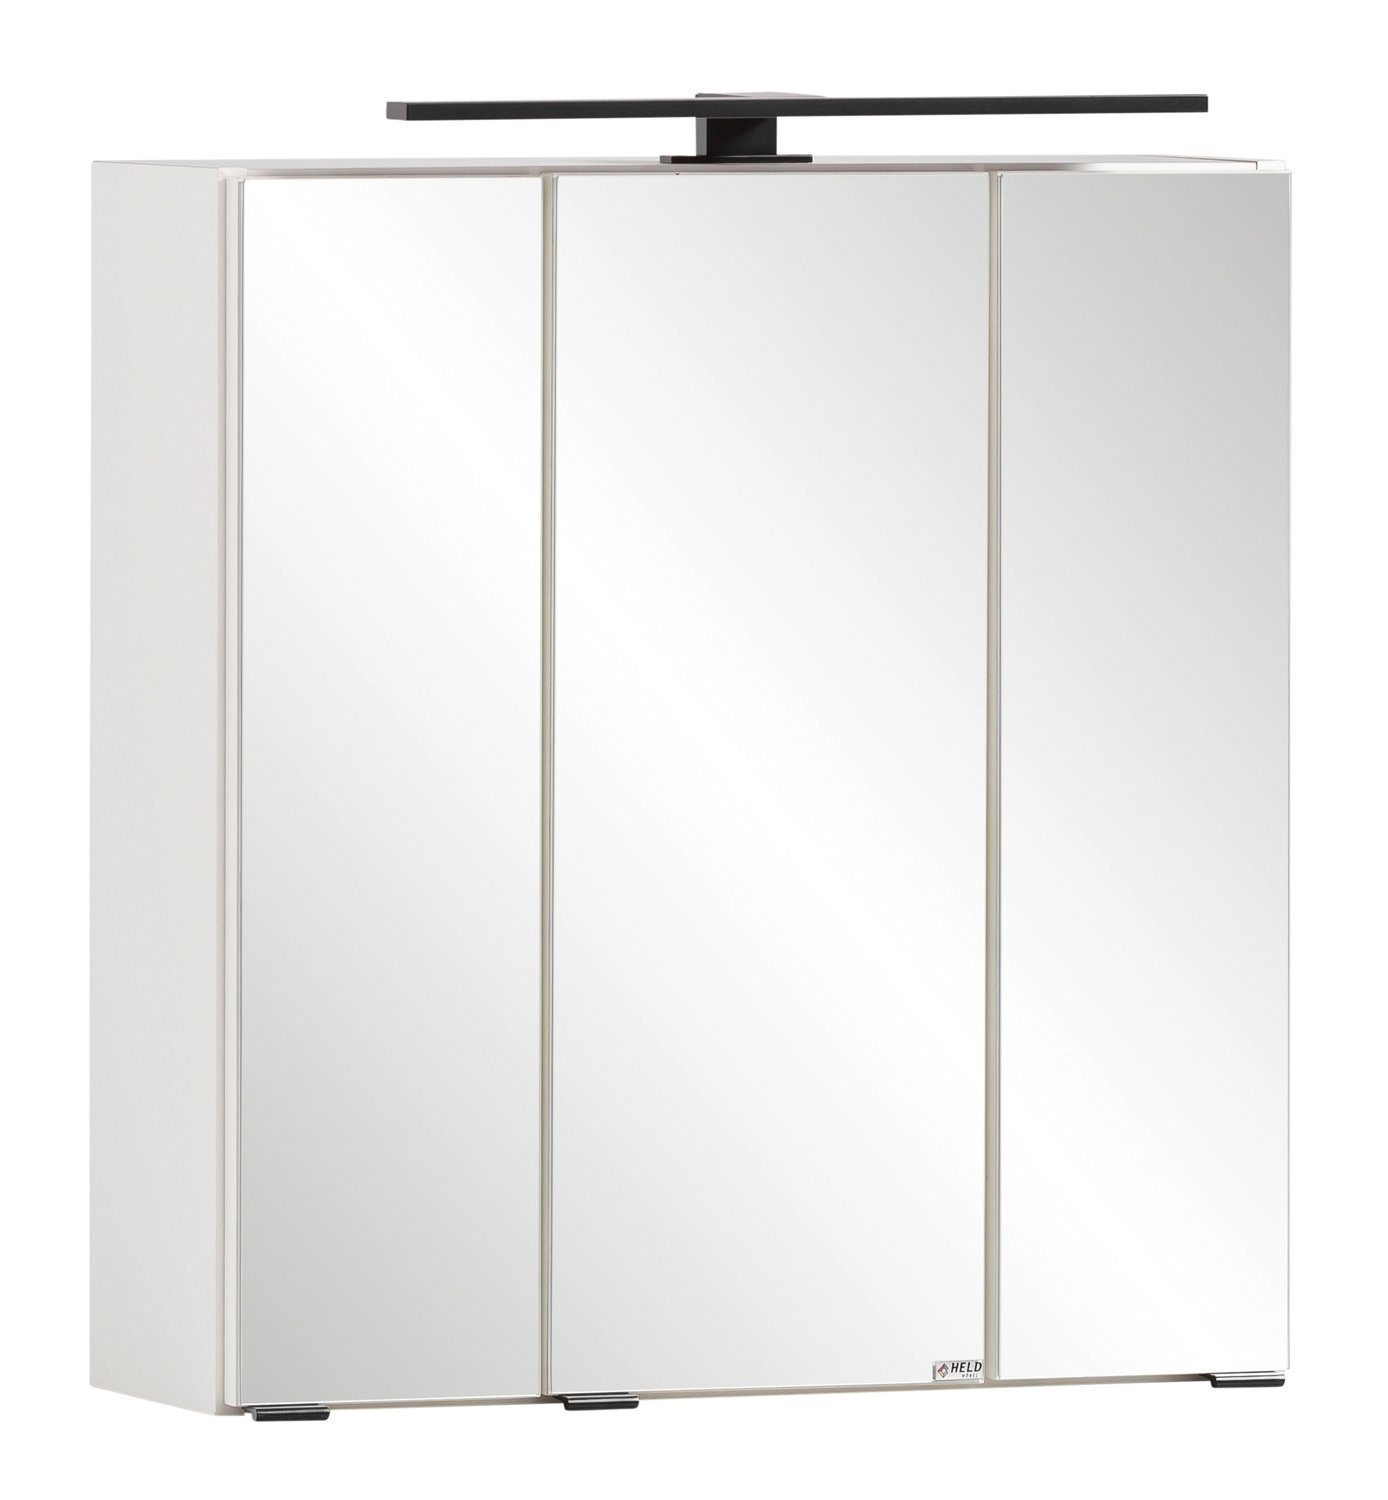 HELD MÖBEL Spiegelschrank MERAN, Weiß, B 60 cm x H 64 cm, mit LED-Aufsatzleuchte Korpus weiß / Front Spiegel | weiß | Spiegelschränke